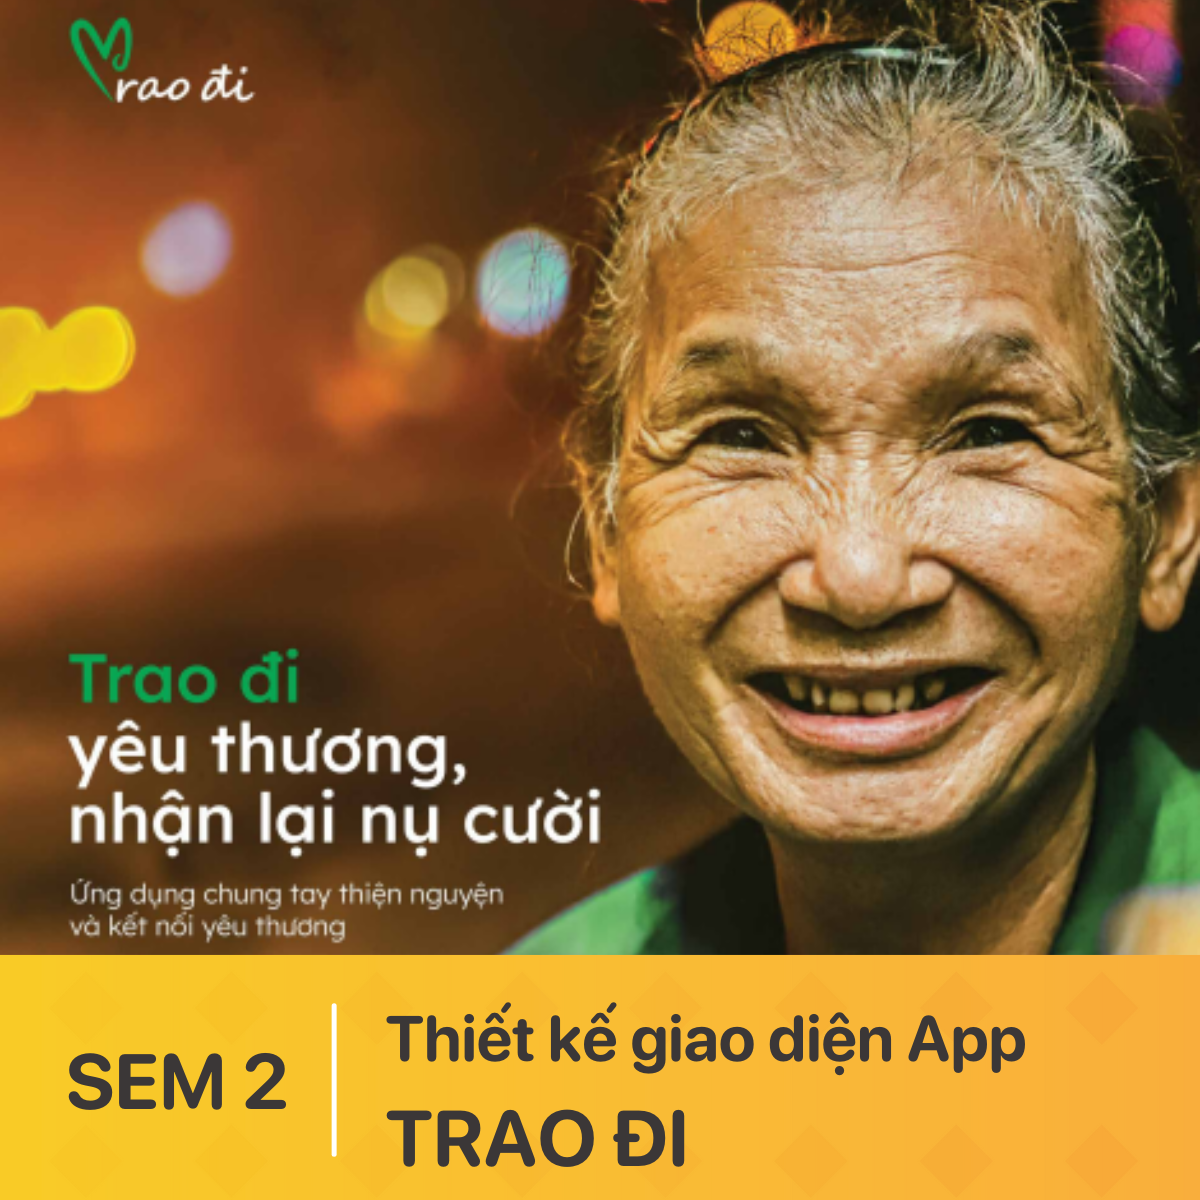 Thiết kế giao diện App – TRAO ĐI – Thiện nguyện kết nối yêu thương